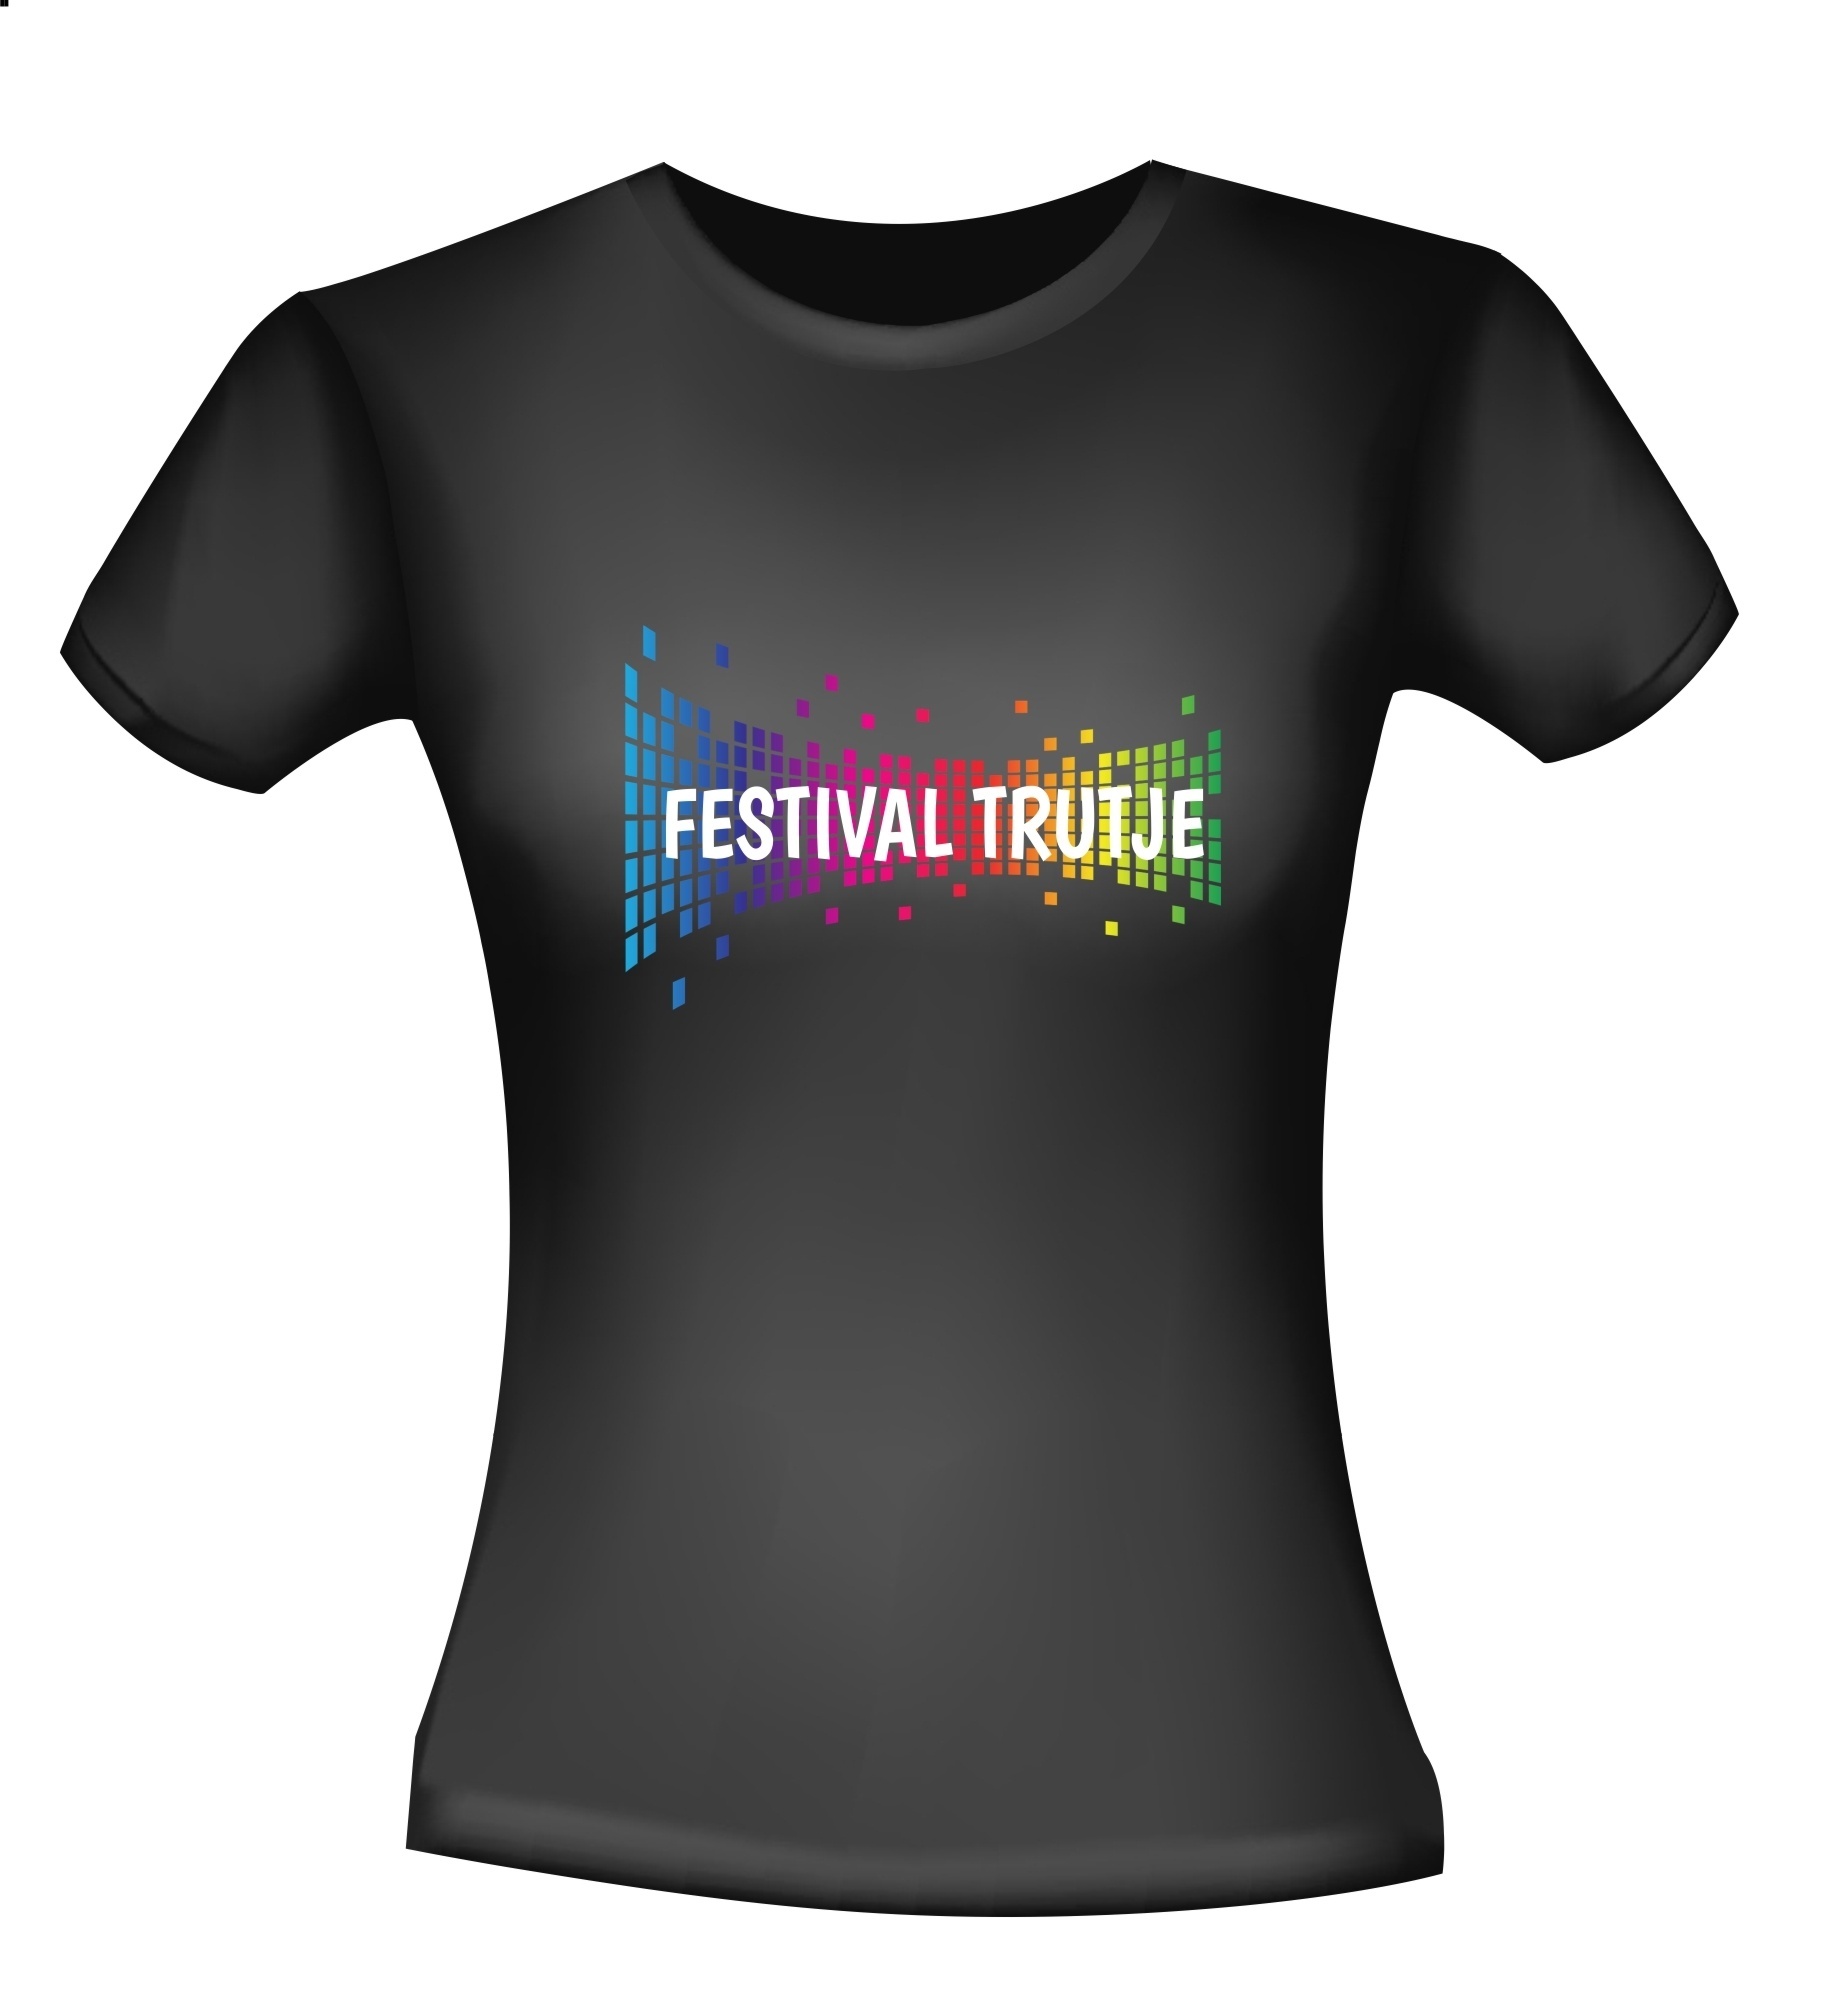 Kleurrijk festival trutje t-shirt voor dames vrolijk